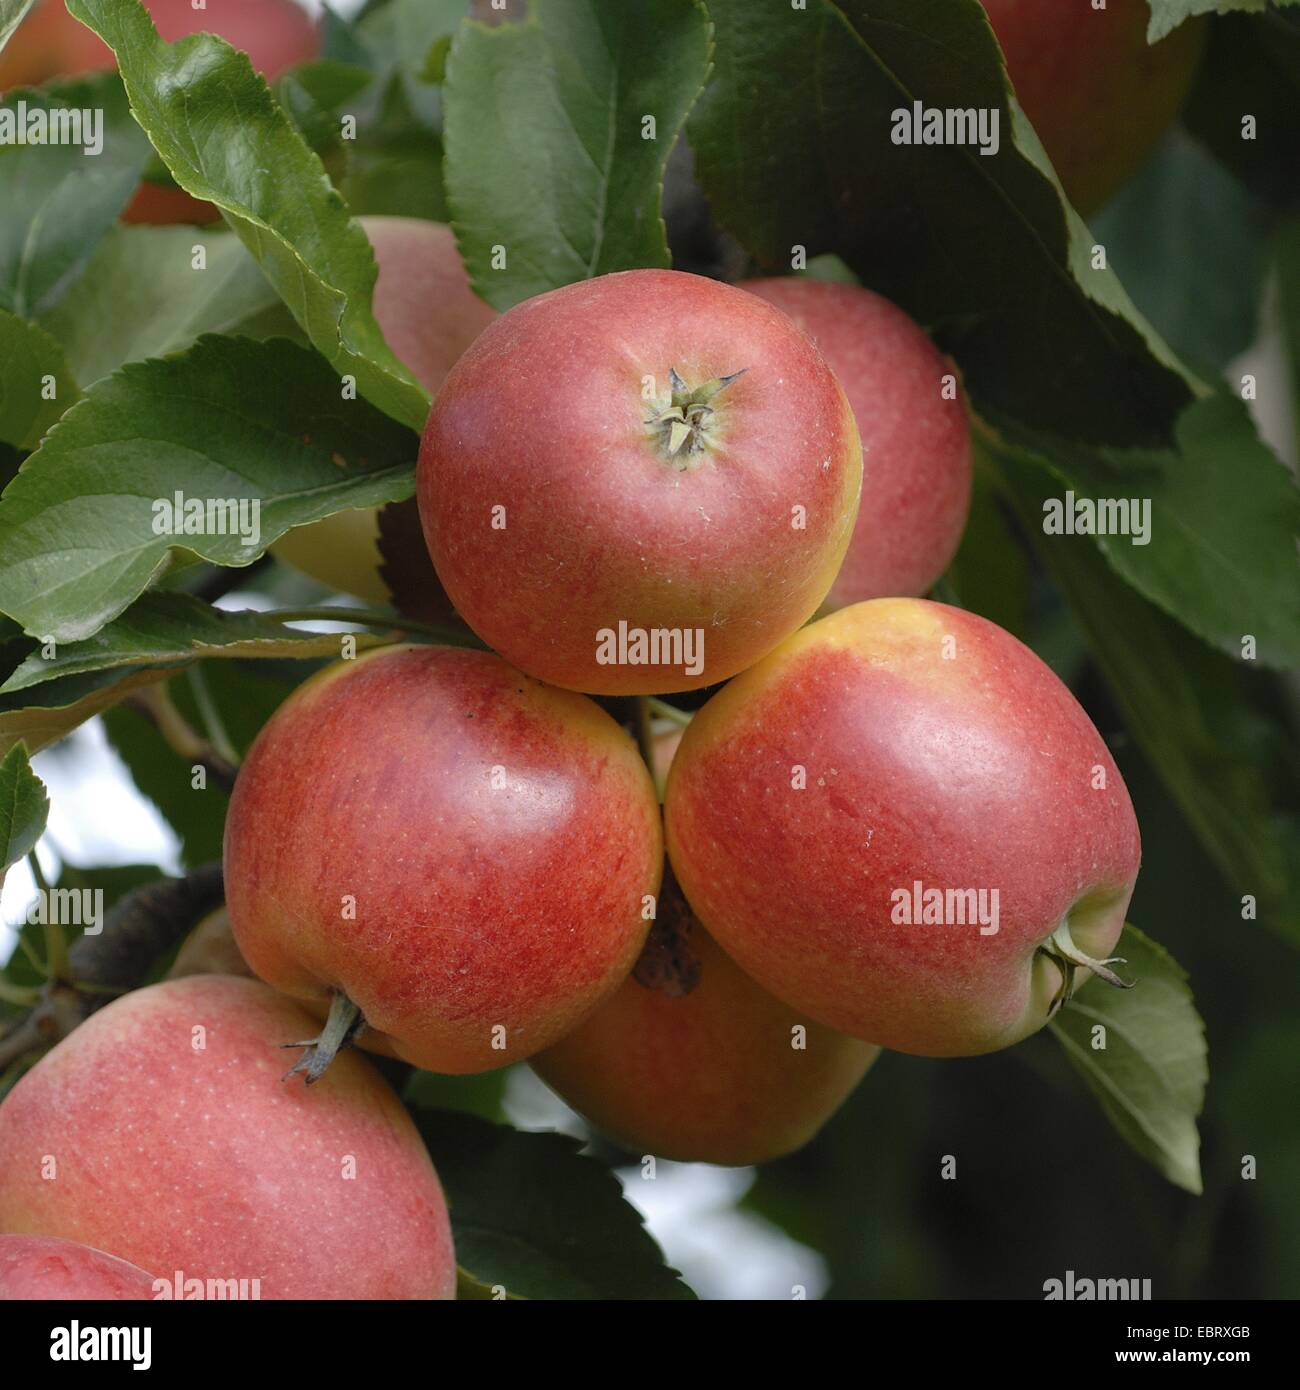 Pommier (Malus domestica 'Gala', Malus domestica) Gala, le cultivar Gala, des pommes sur un arbre Banque D'Images